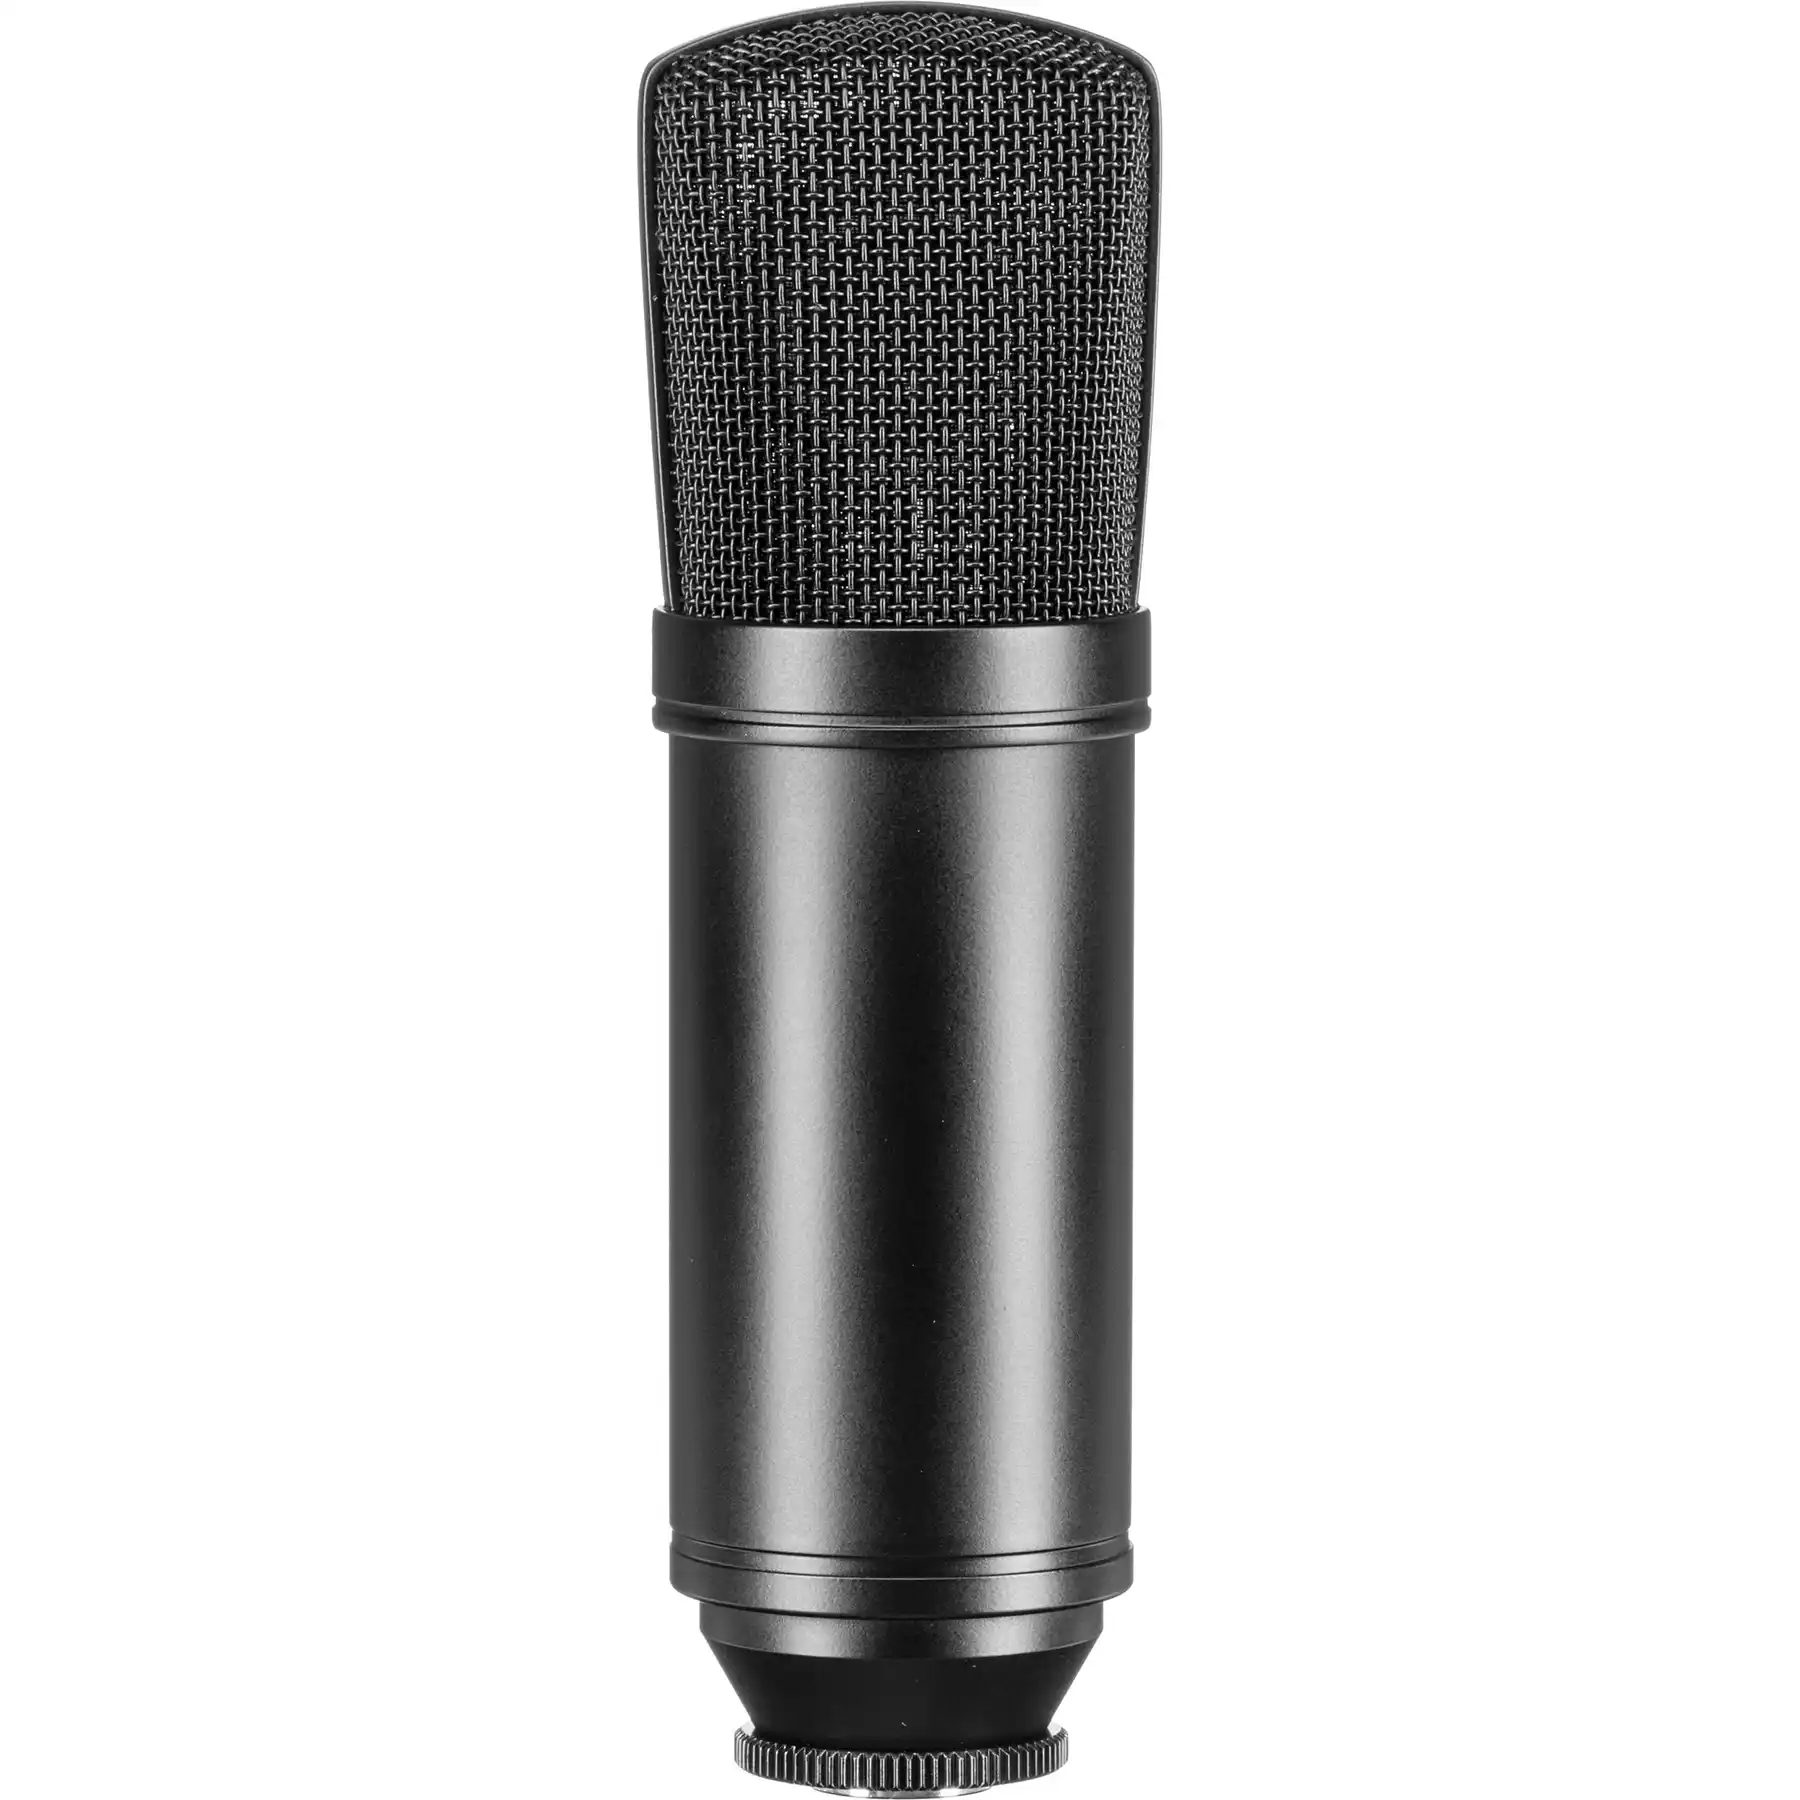 MXL 440 Stüdyo Condenser Mikrofon